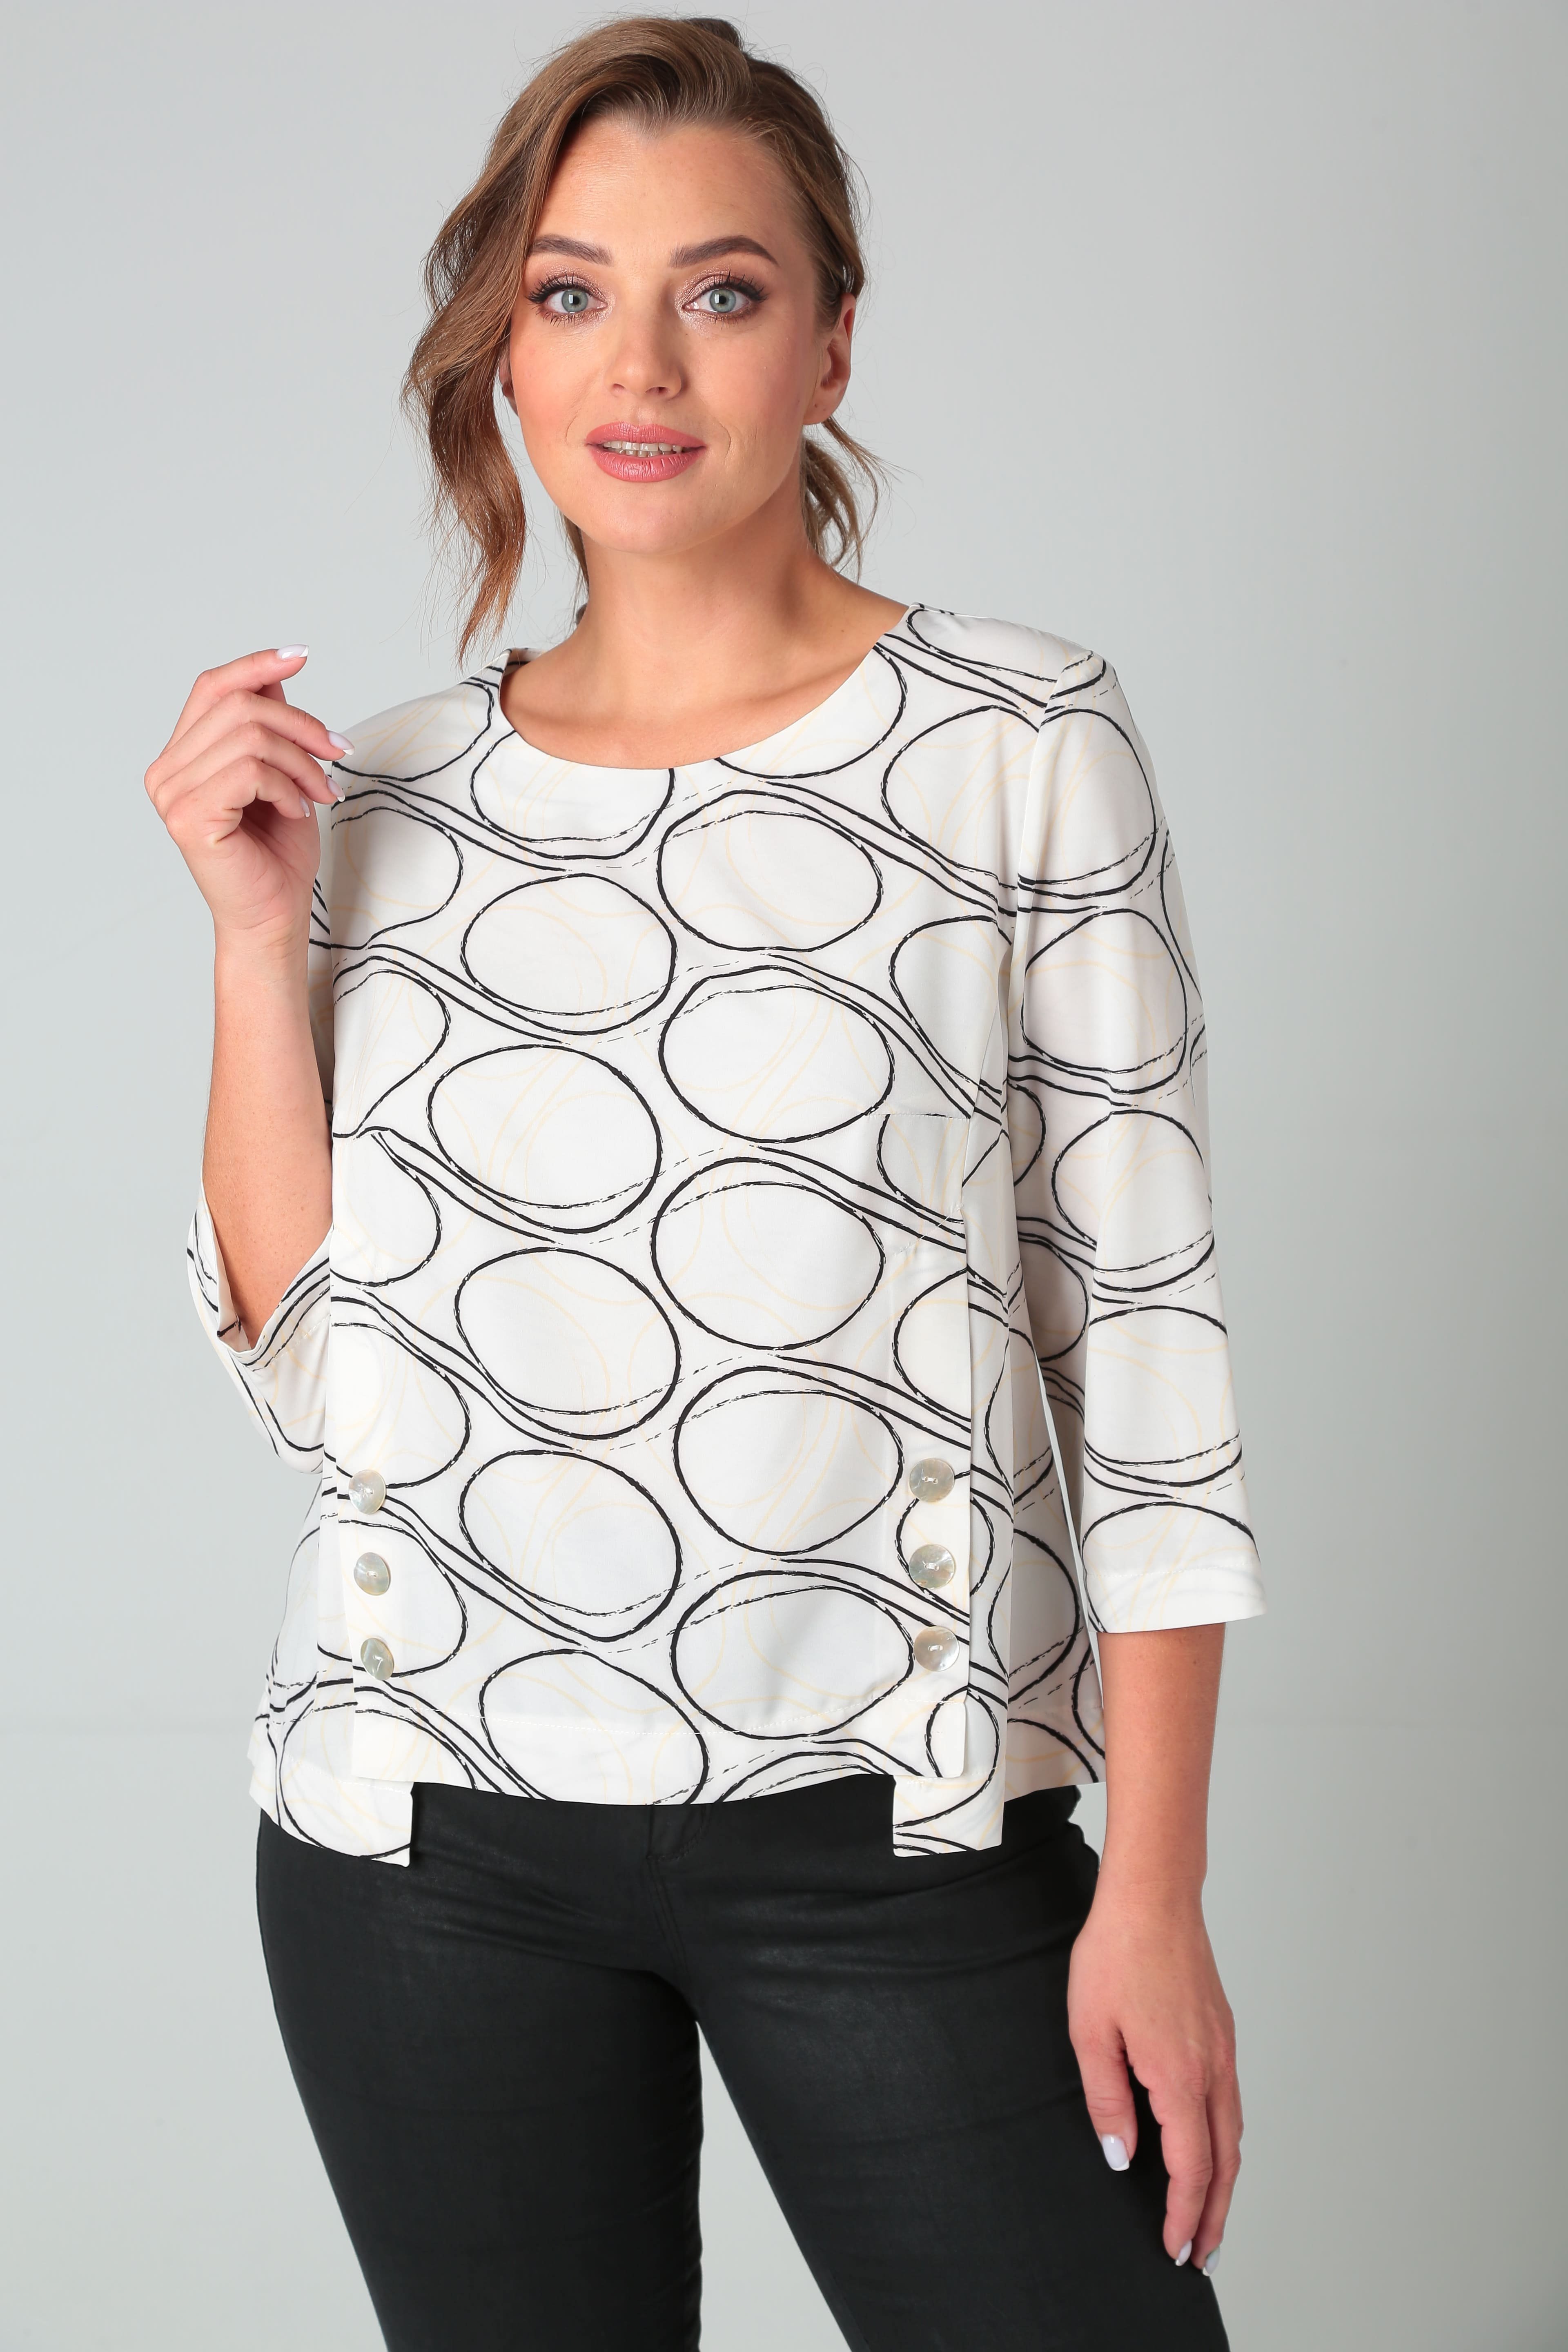 Женская оригинальная блуза с геометрическим рисунком